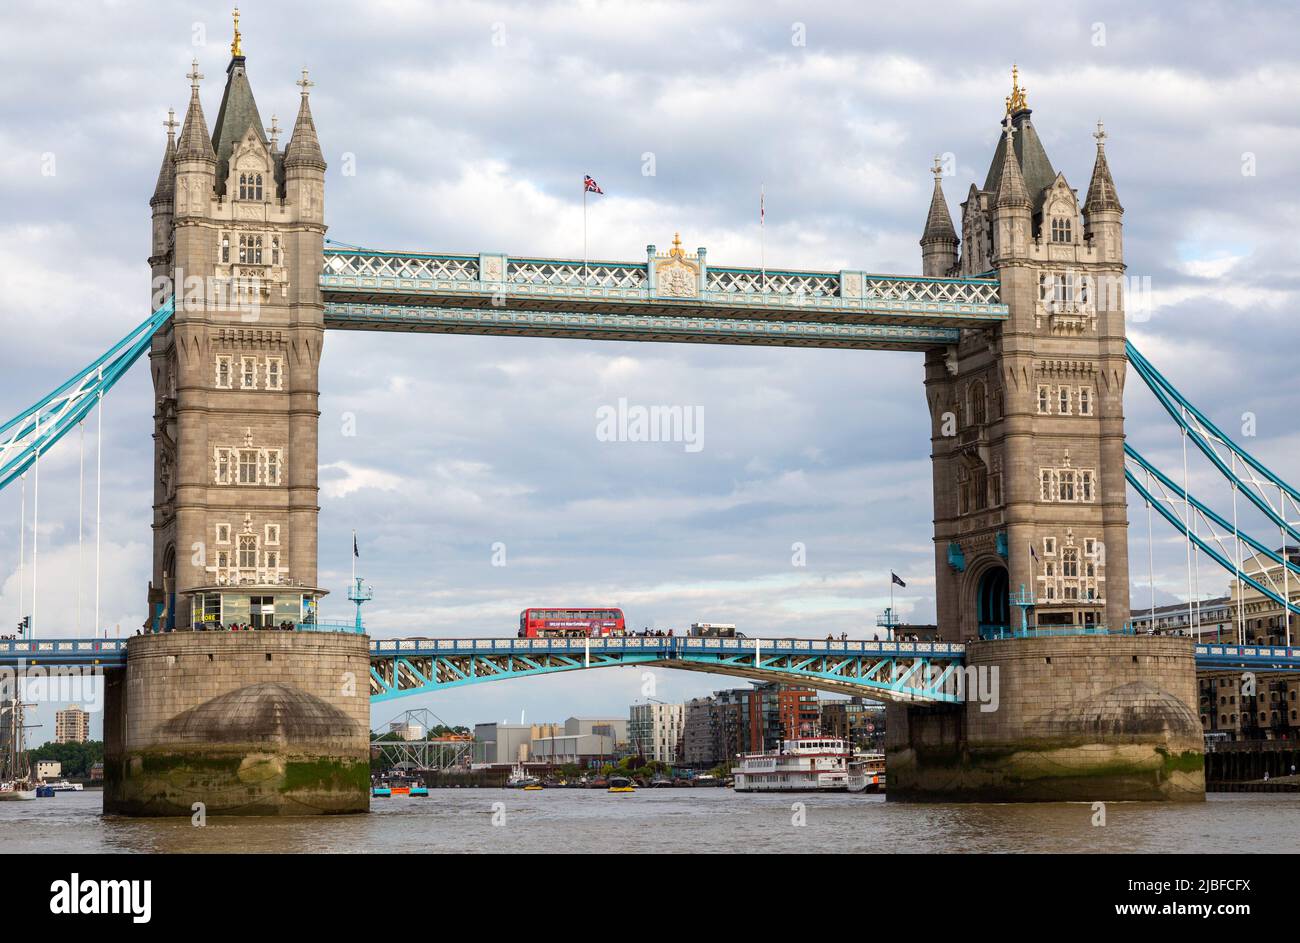 Bus à impériale rouge traversant Tower Bridge, River Thames, Londres, Angleterre, Royaume-Uni Banque D'Images